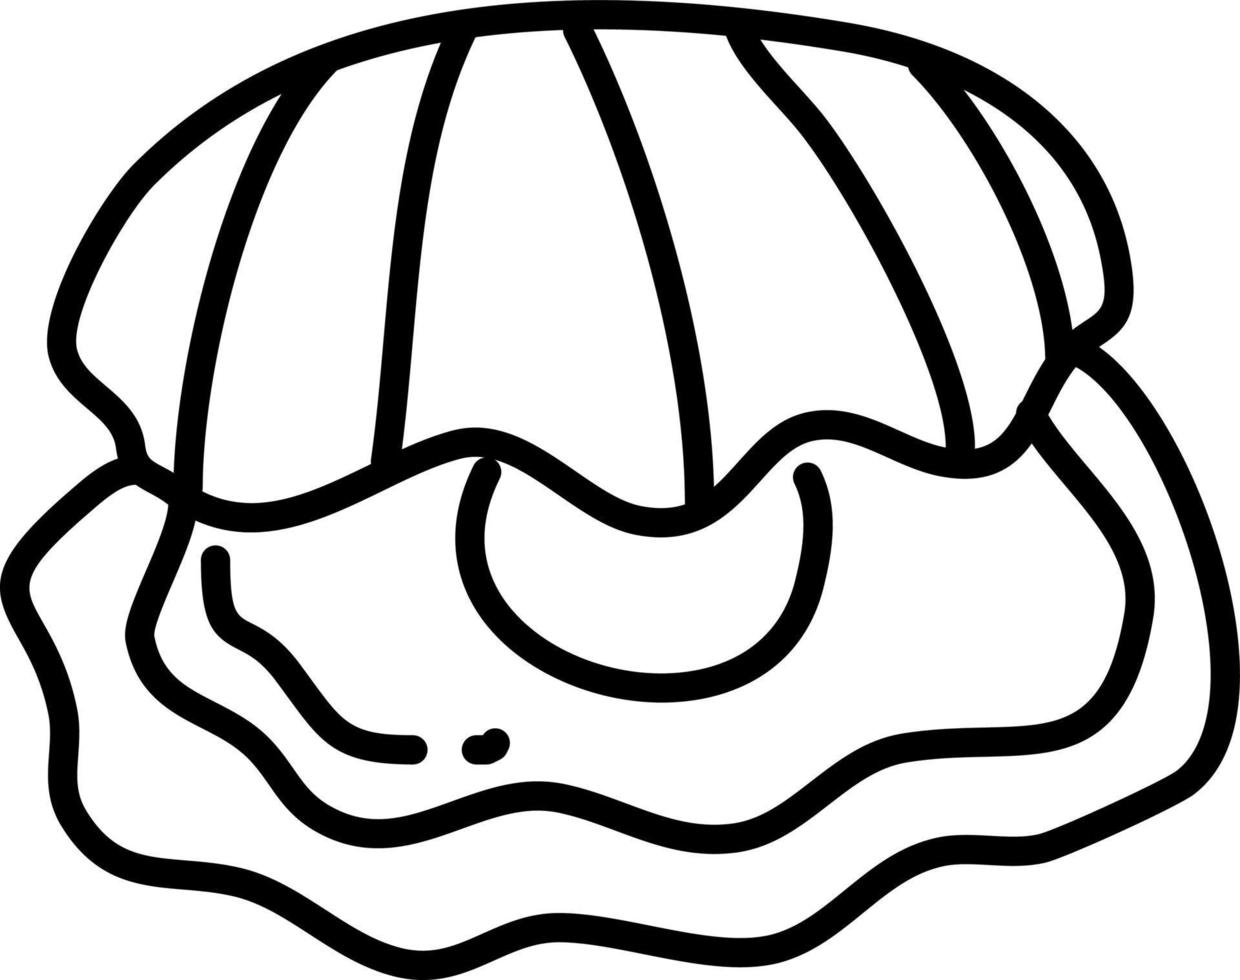 Shell avec diamant, illustration, vecteur sur fond blanc